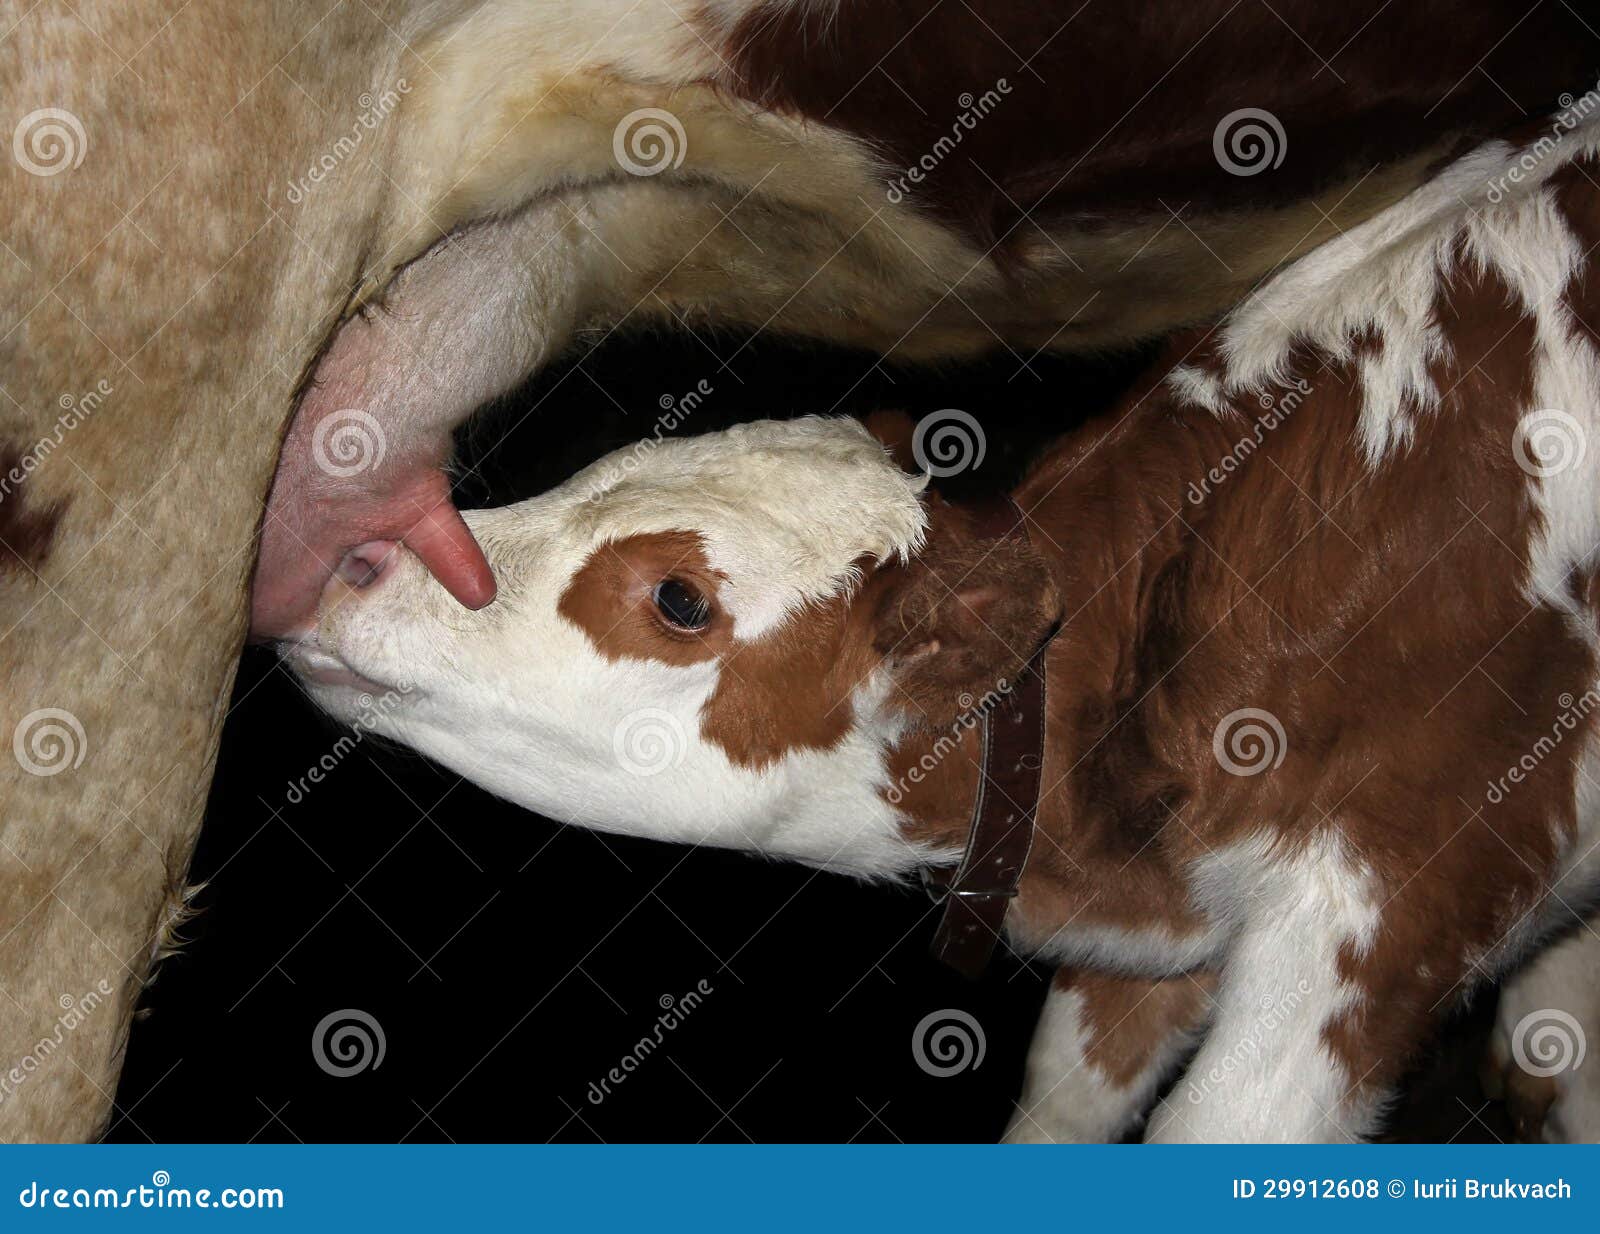 Mammals Suck Milk!